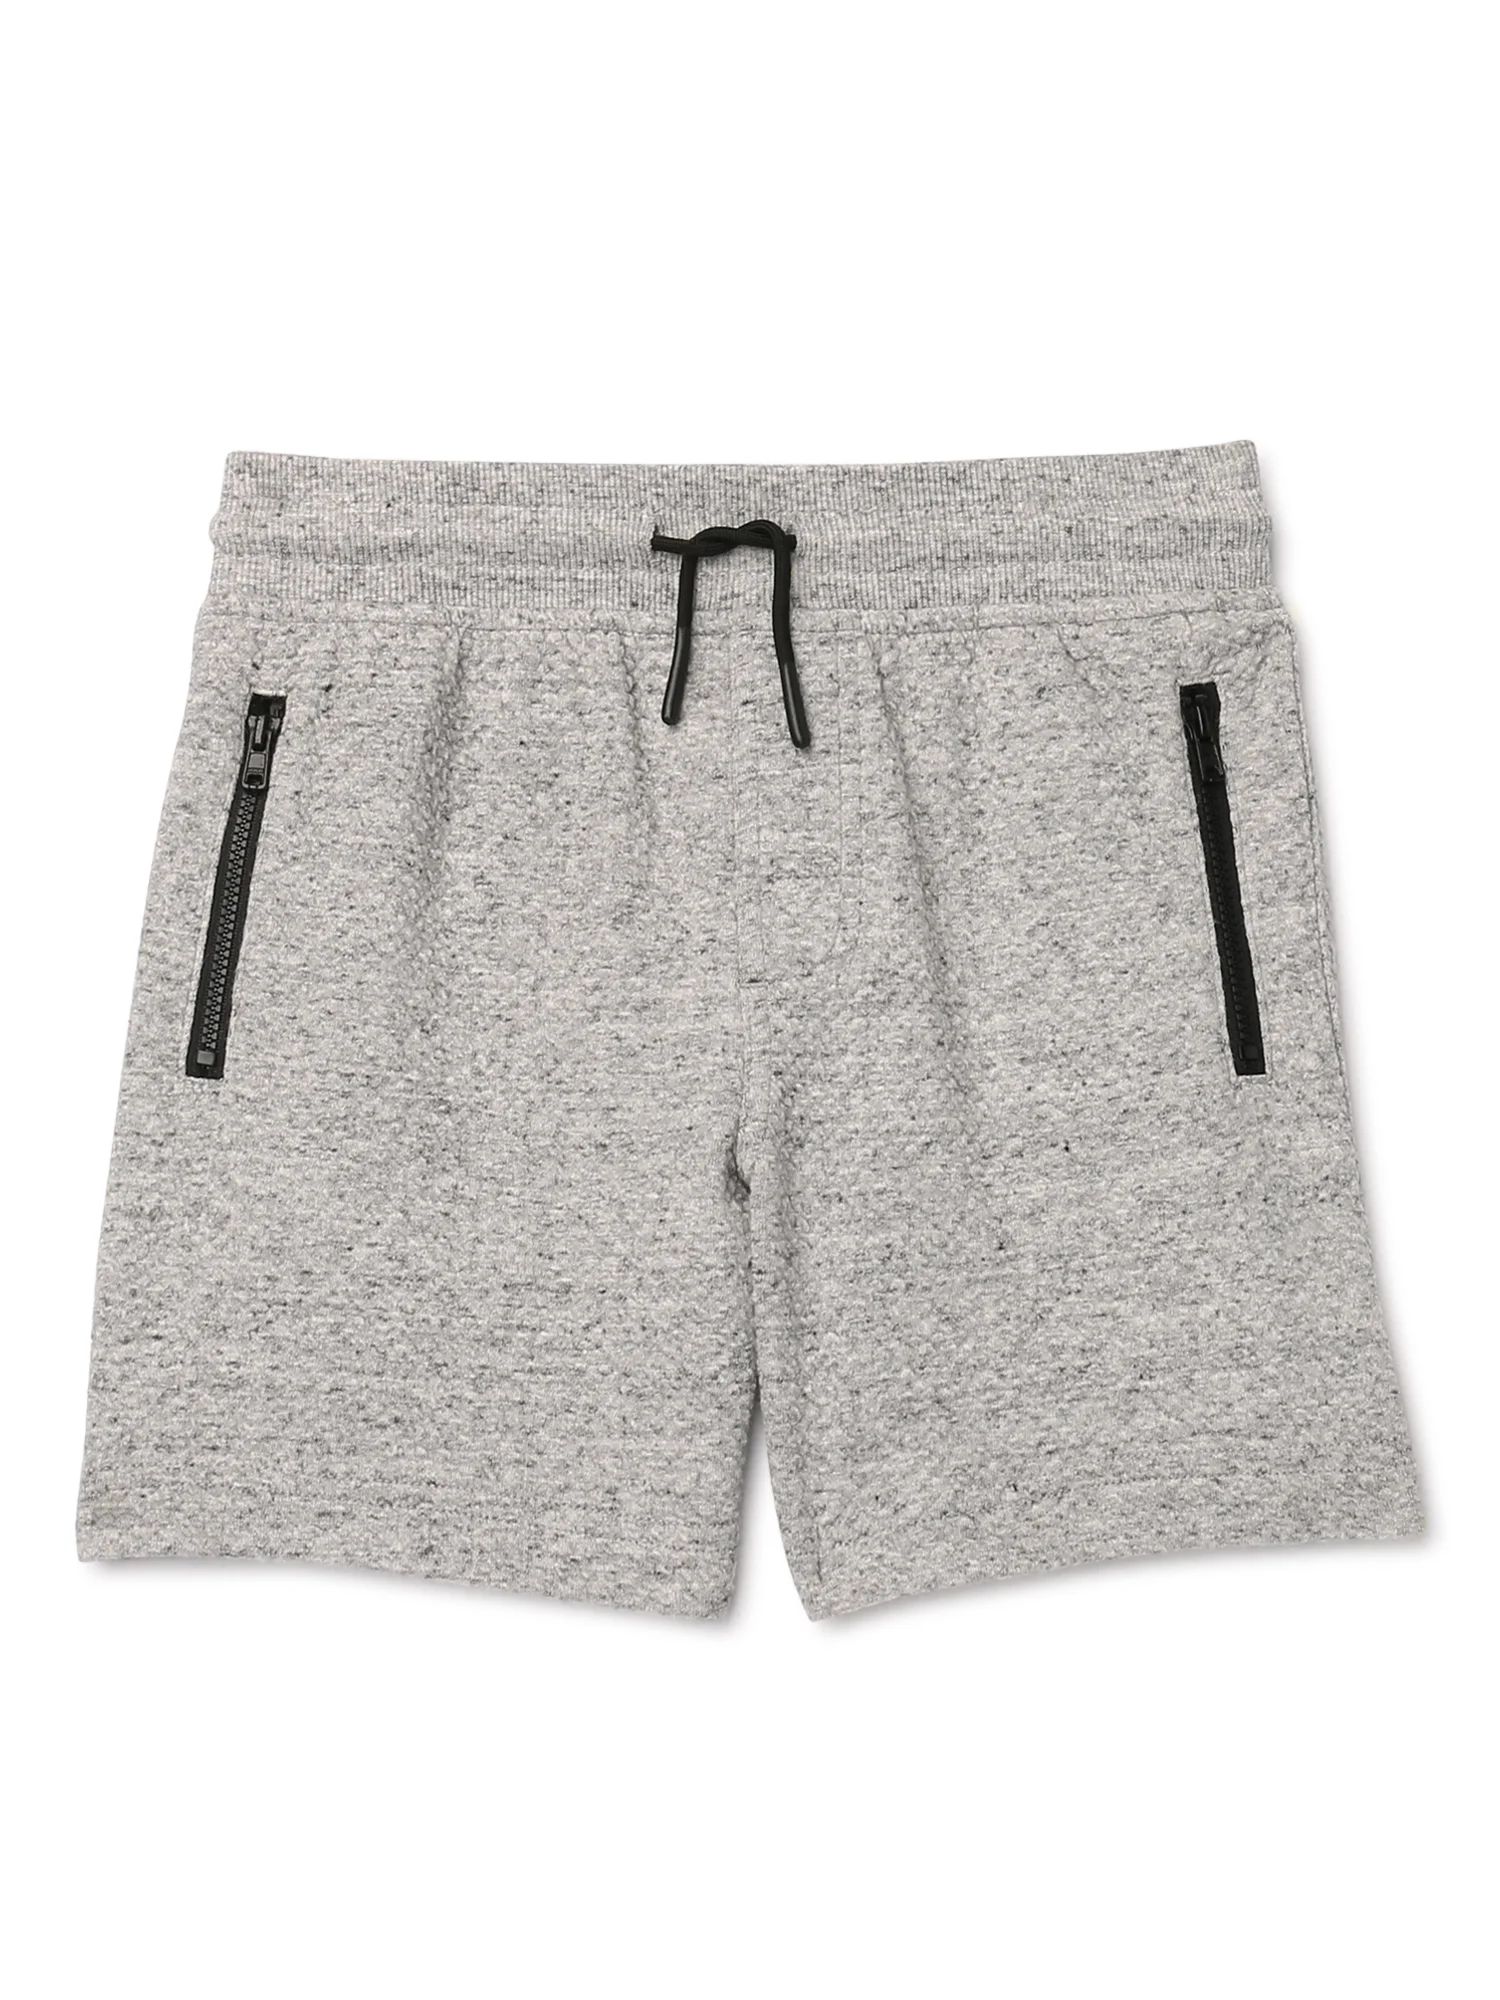 Wonder Nation Boys Lounge Shorts, Sizes 4-18 & Husky | Walmart (US)